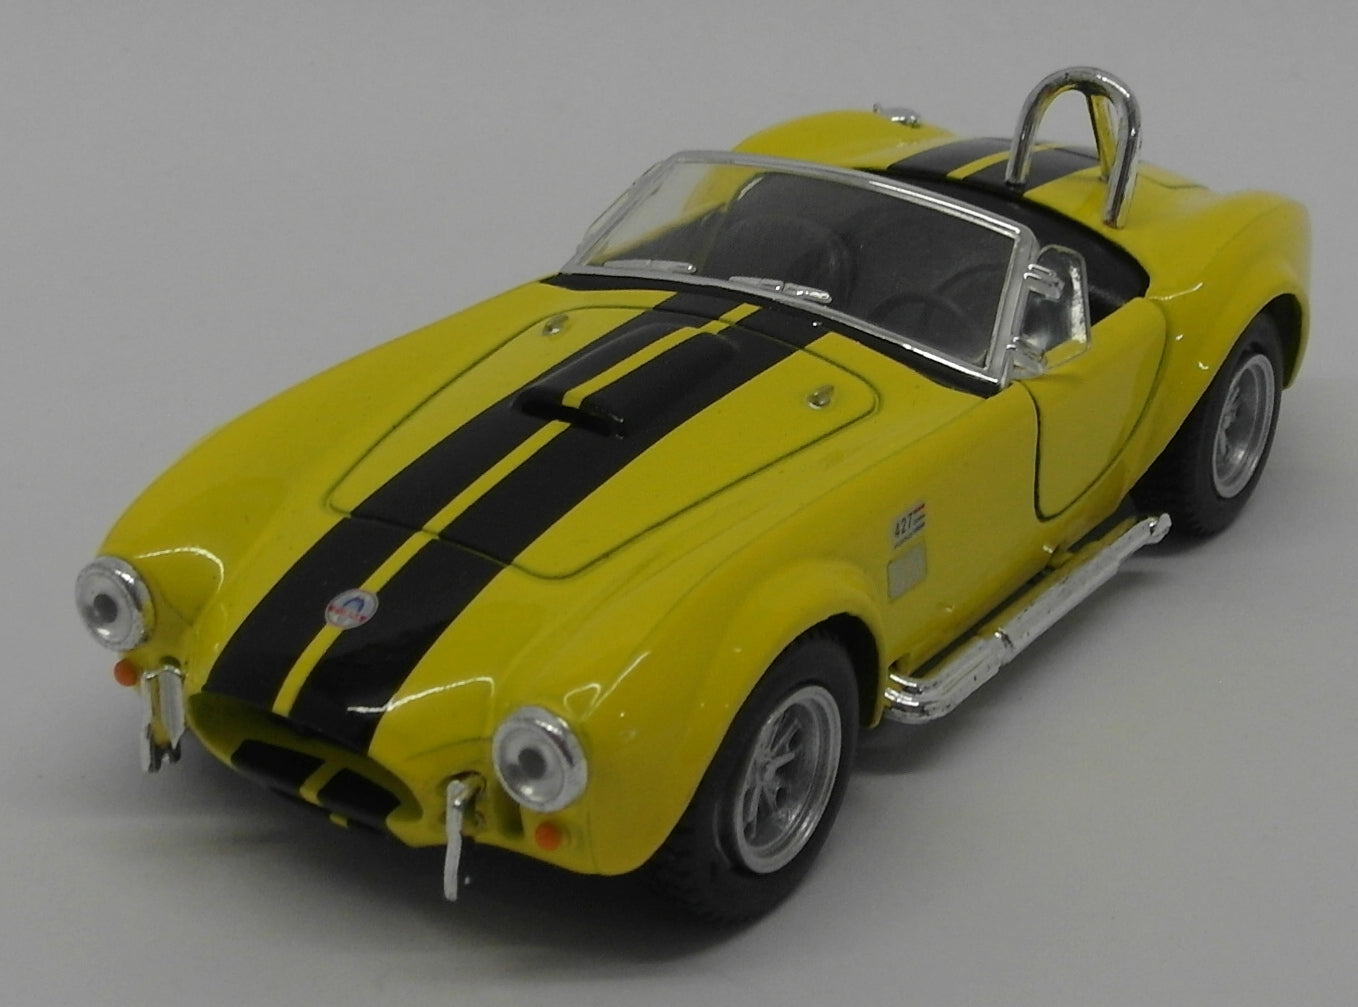 1965 Shelby Cobra 427 S/C - Yellow - Kinsmart Pull Back & Go Diecast Metal Model Car